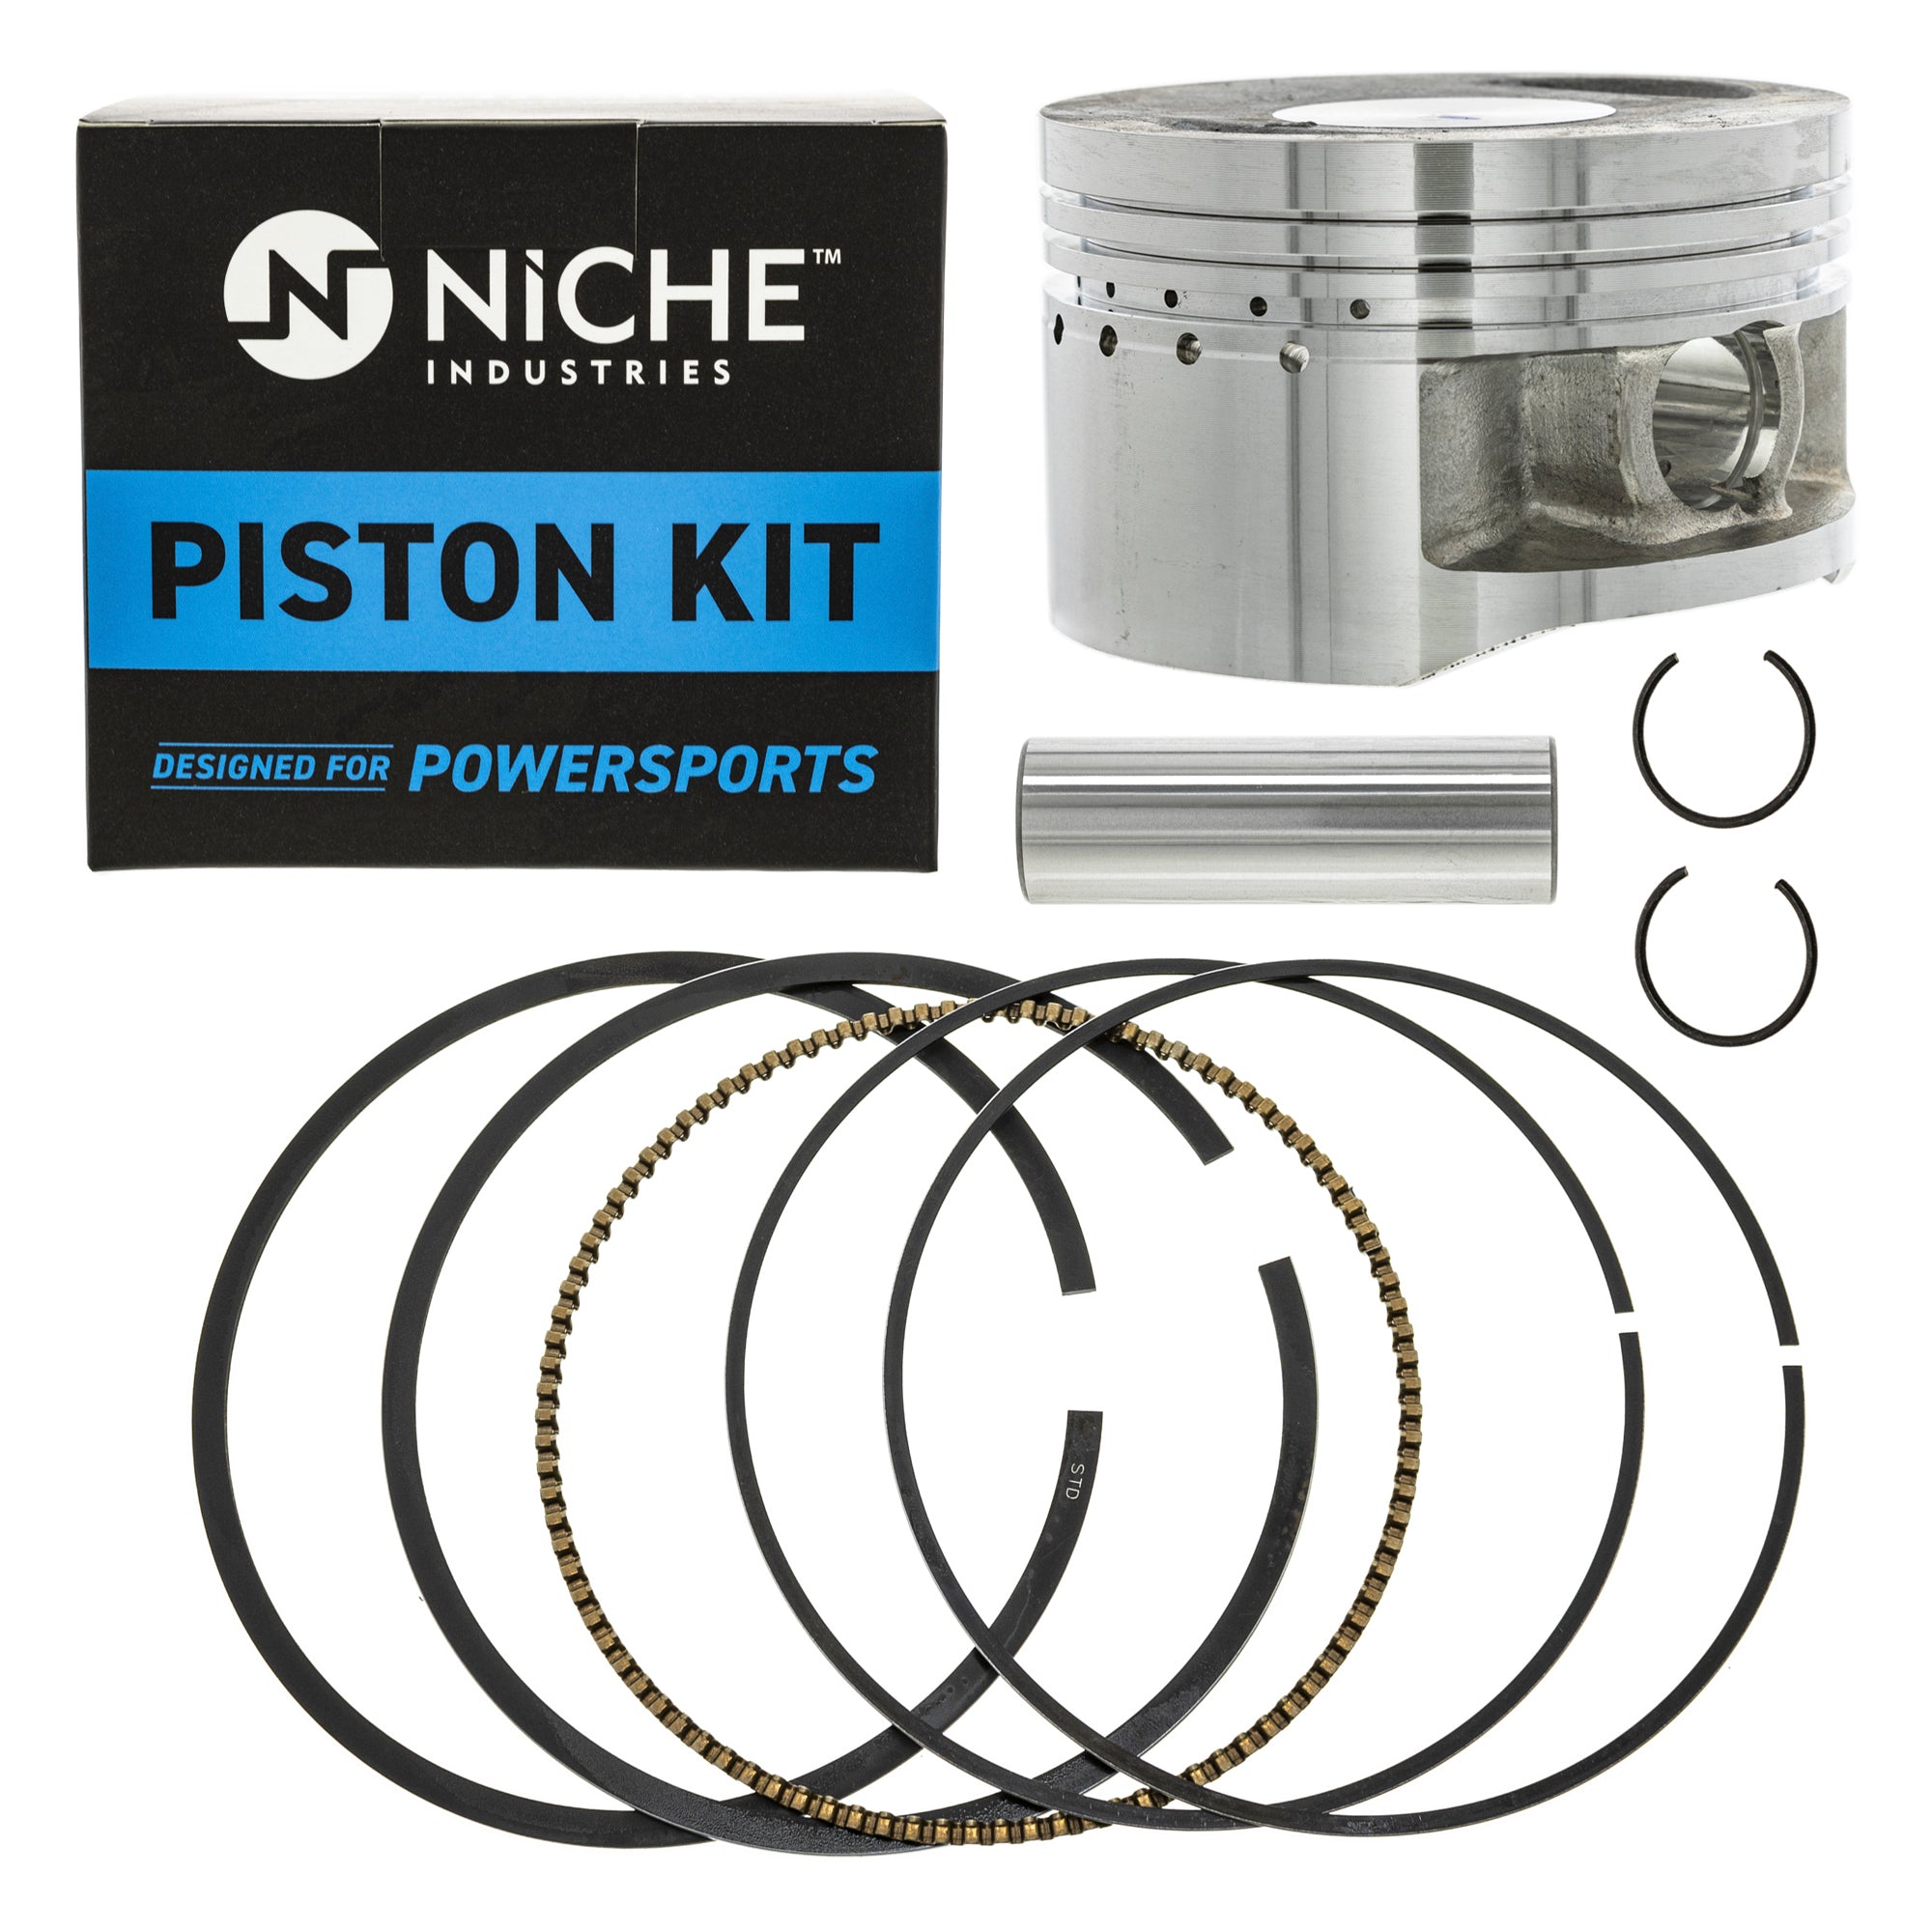 NICHE MK1001141 Piston Kit